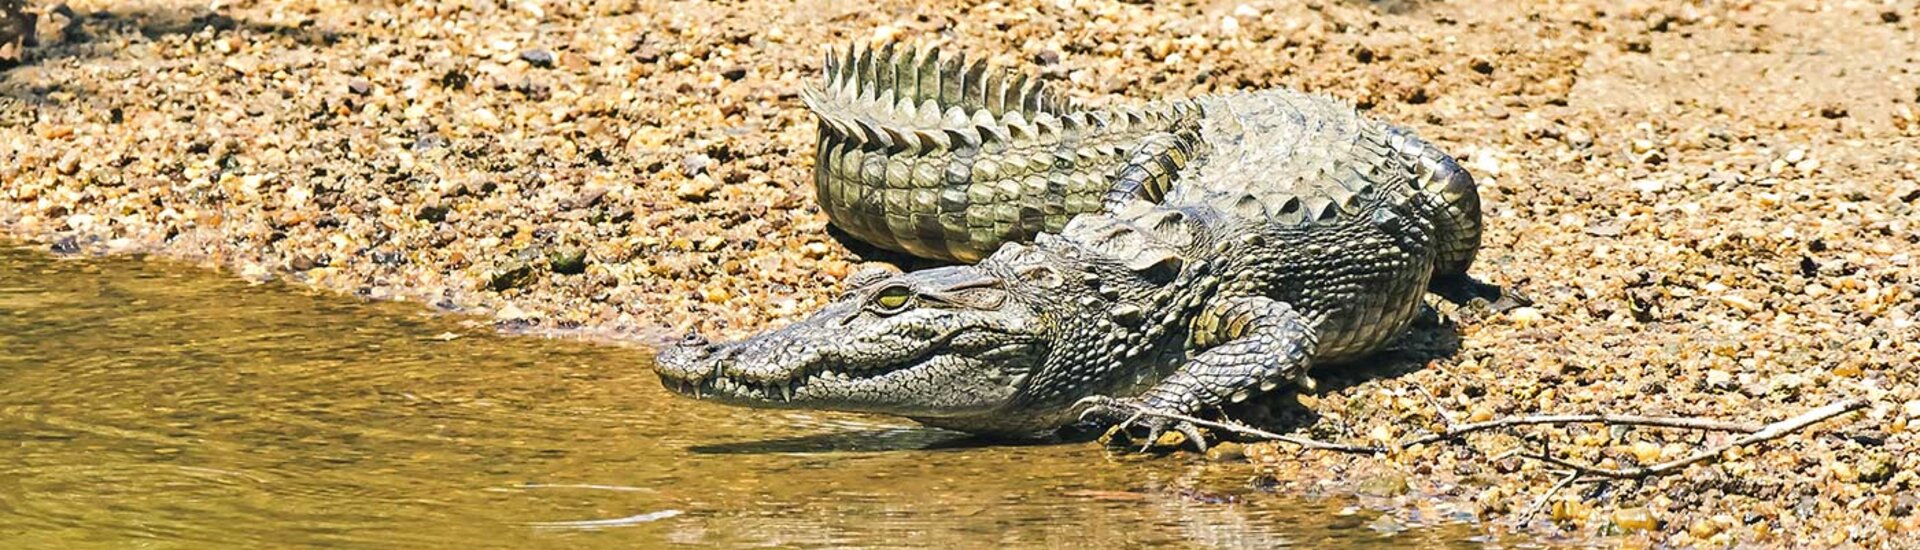 Sri Lanka Wilpattu Nationalpark Krokodil